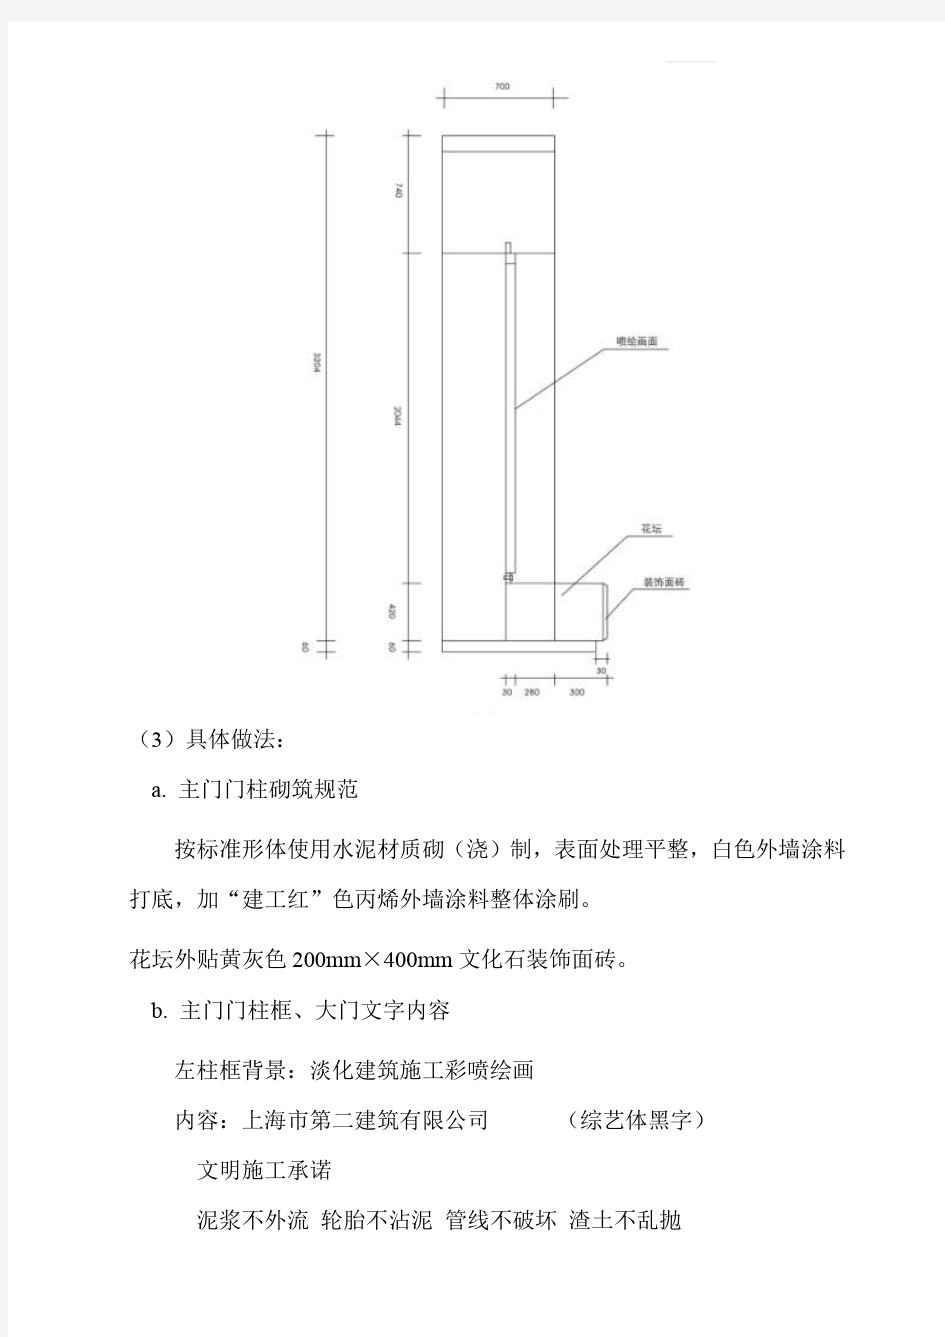 上海建工集团视觉系统(施工现场文明标准化)